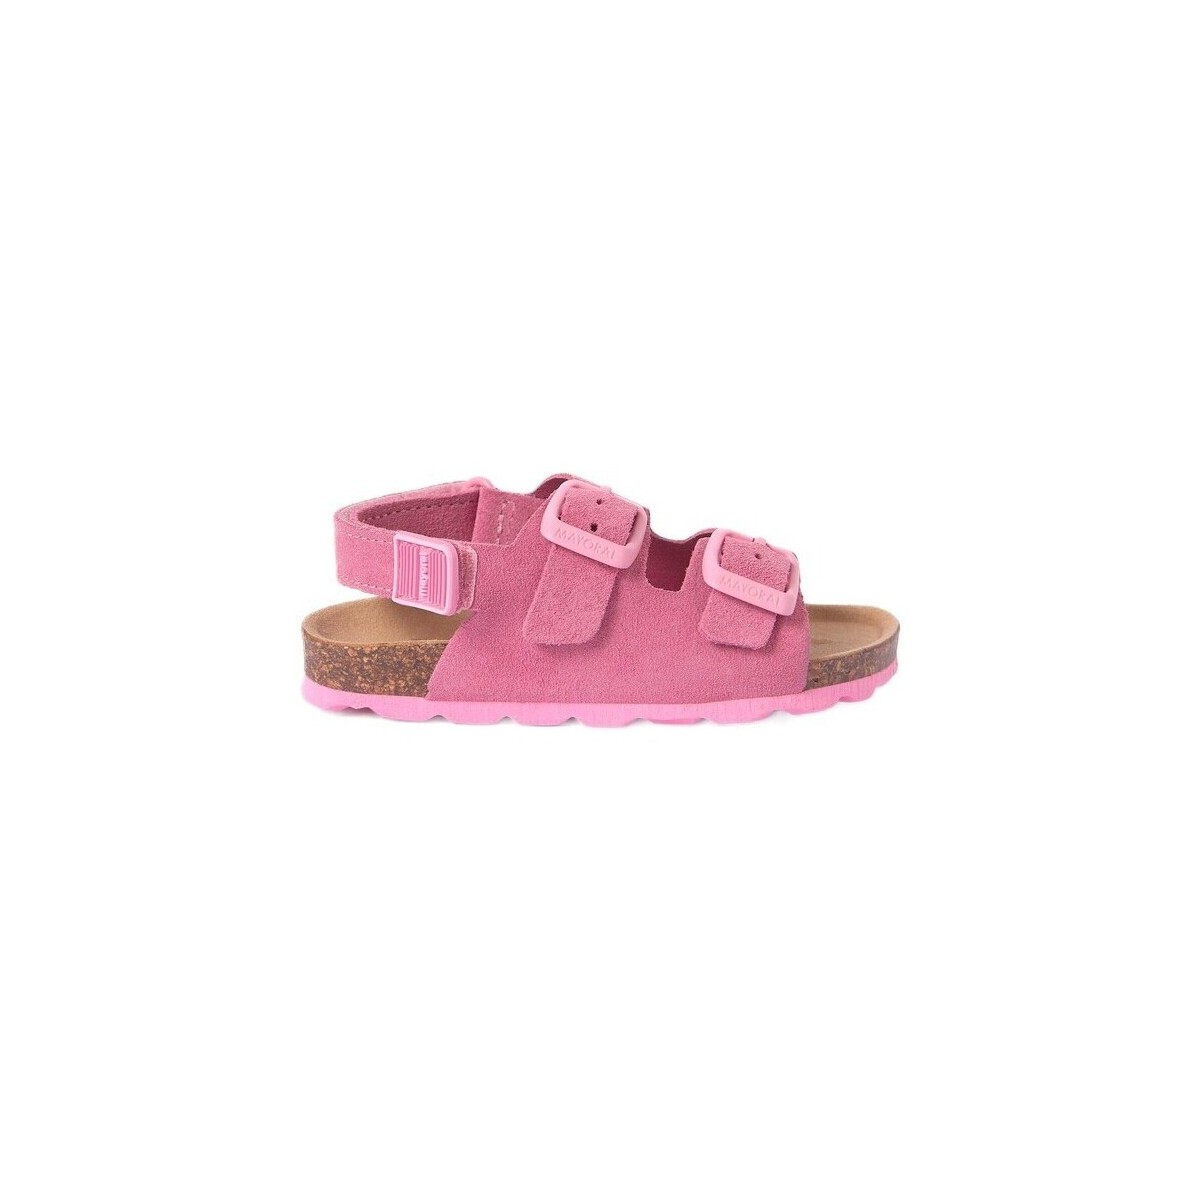 Topánky Sandále Mayoral 28250-18 Ružová